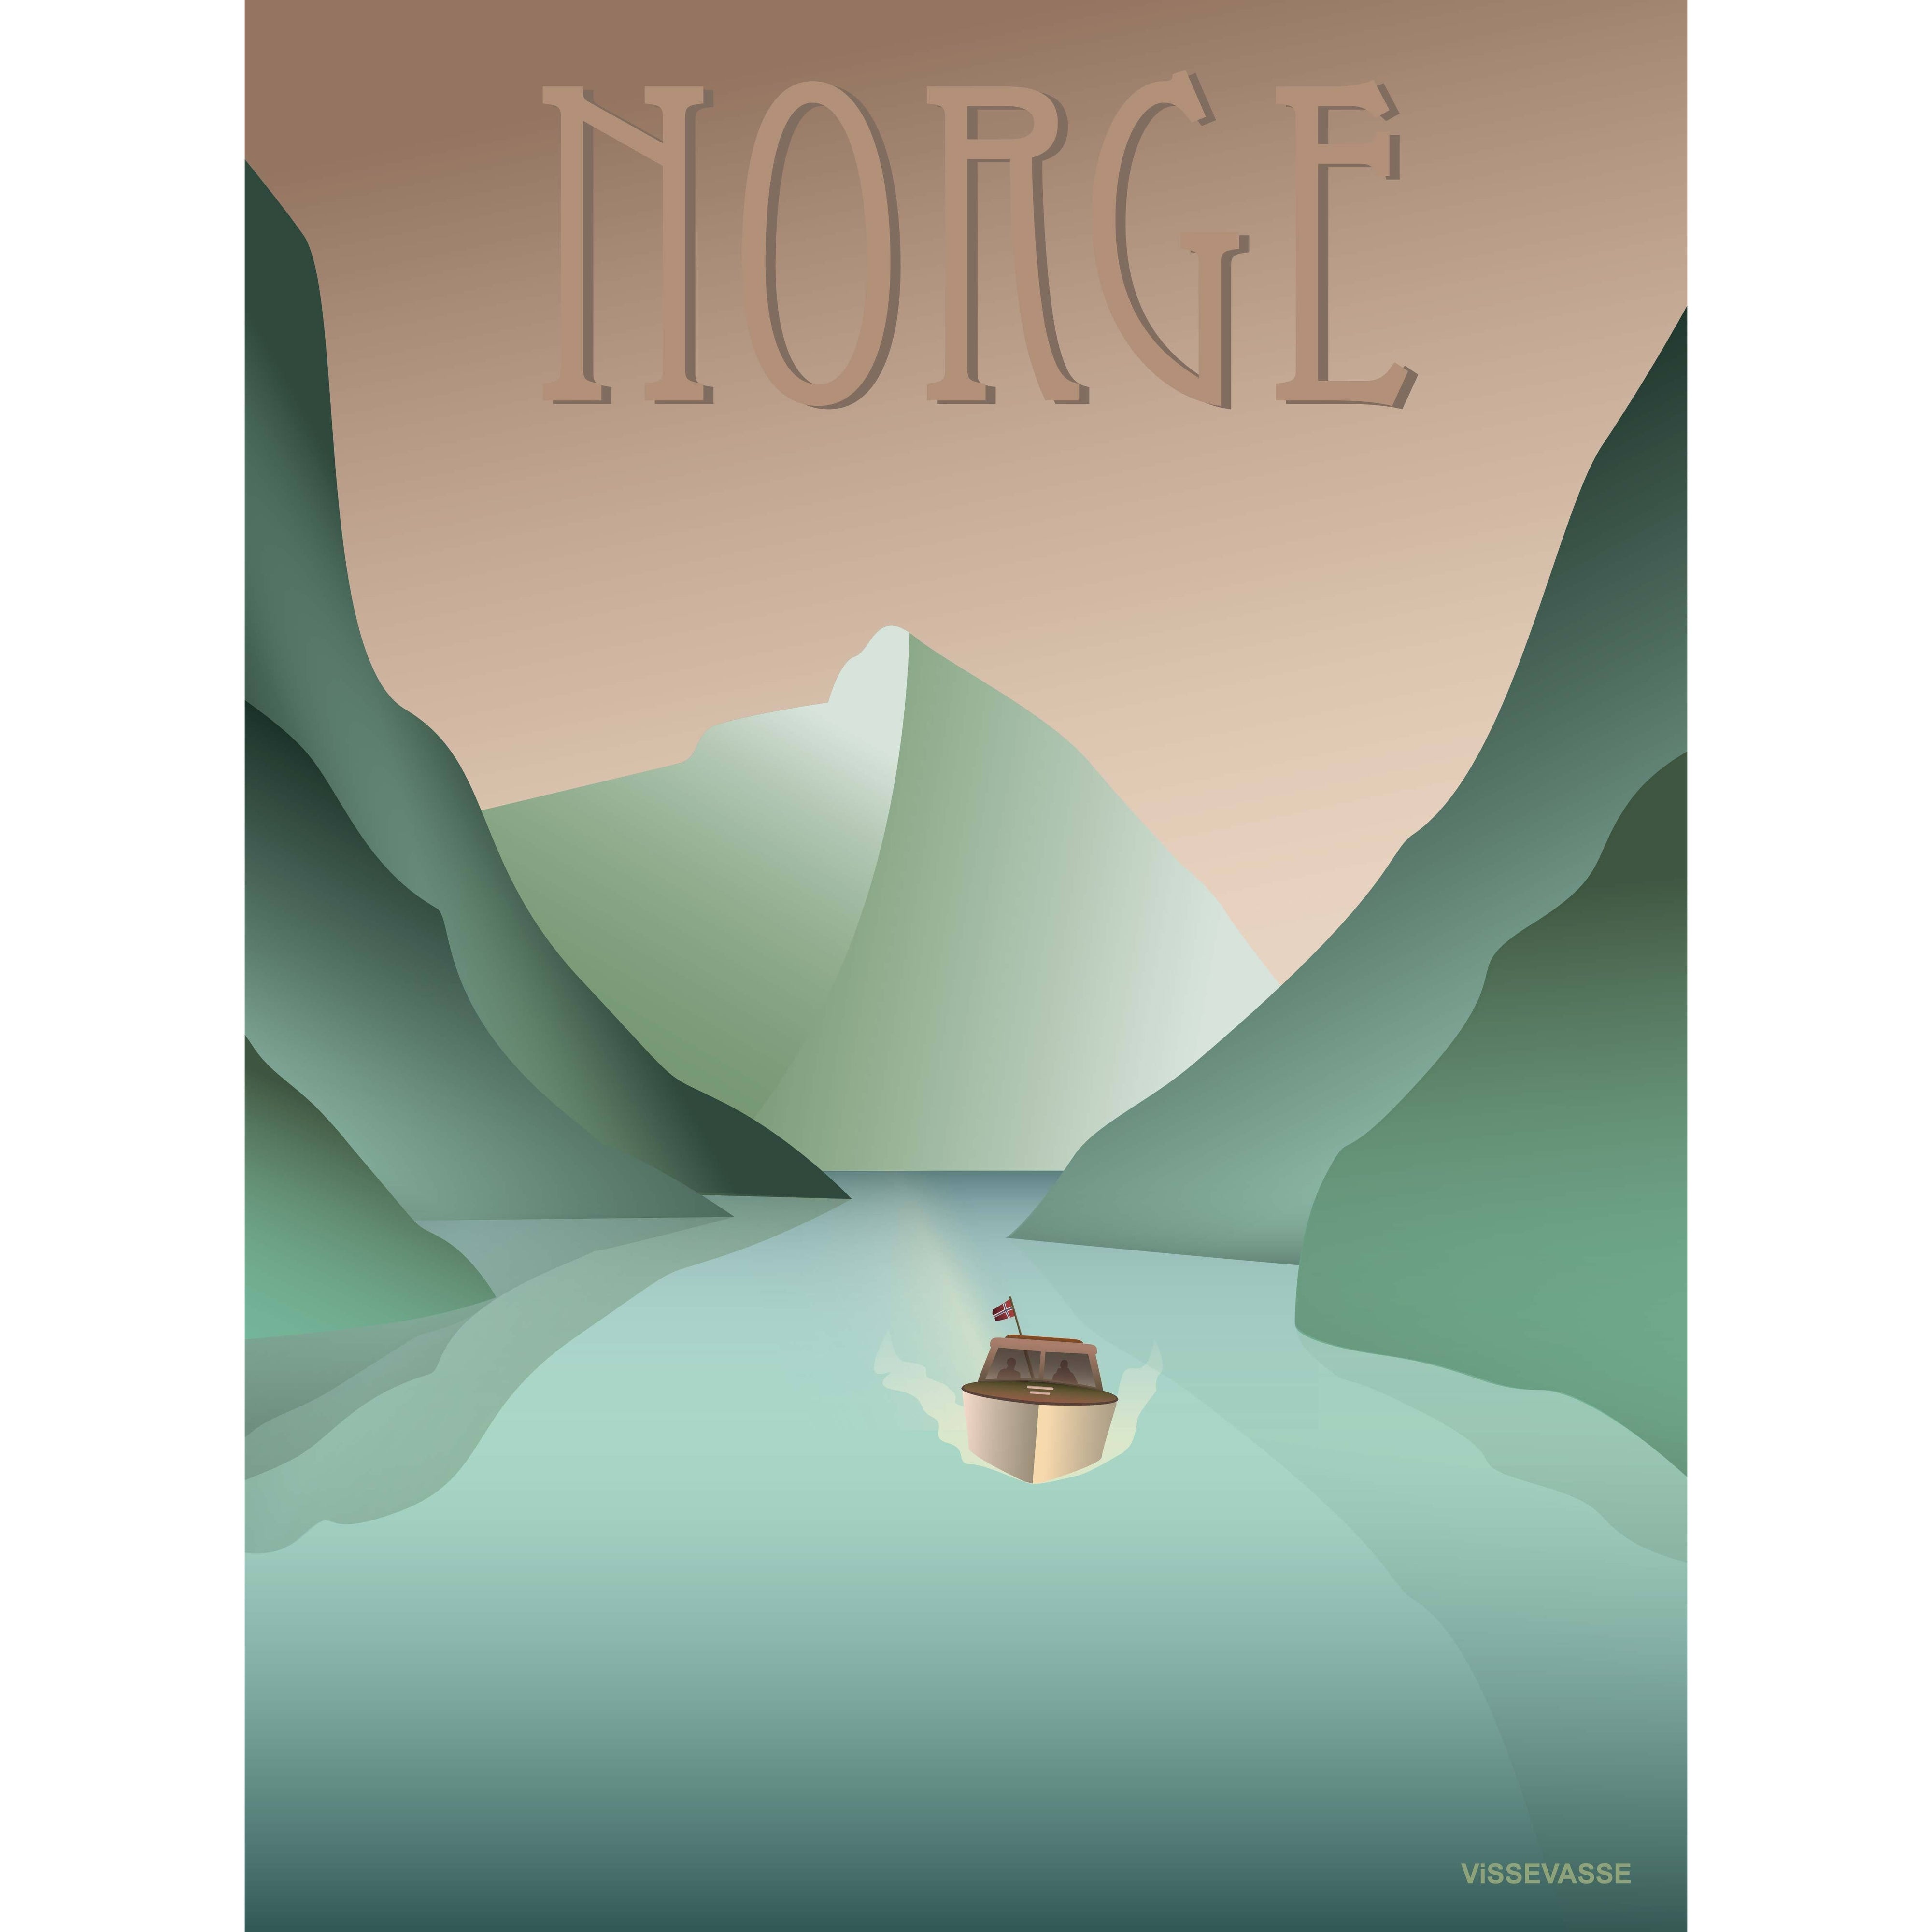 Vissevasse Norwegen Fjord Poster, 15X21 Cm-Wanddekoration-Vissevasse-5713138440017-F-2014-400-S-VIS-inwohn